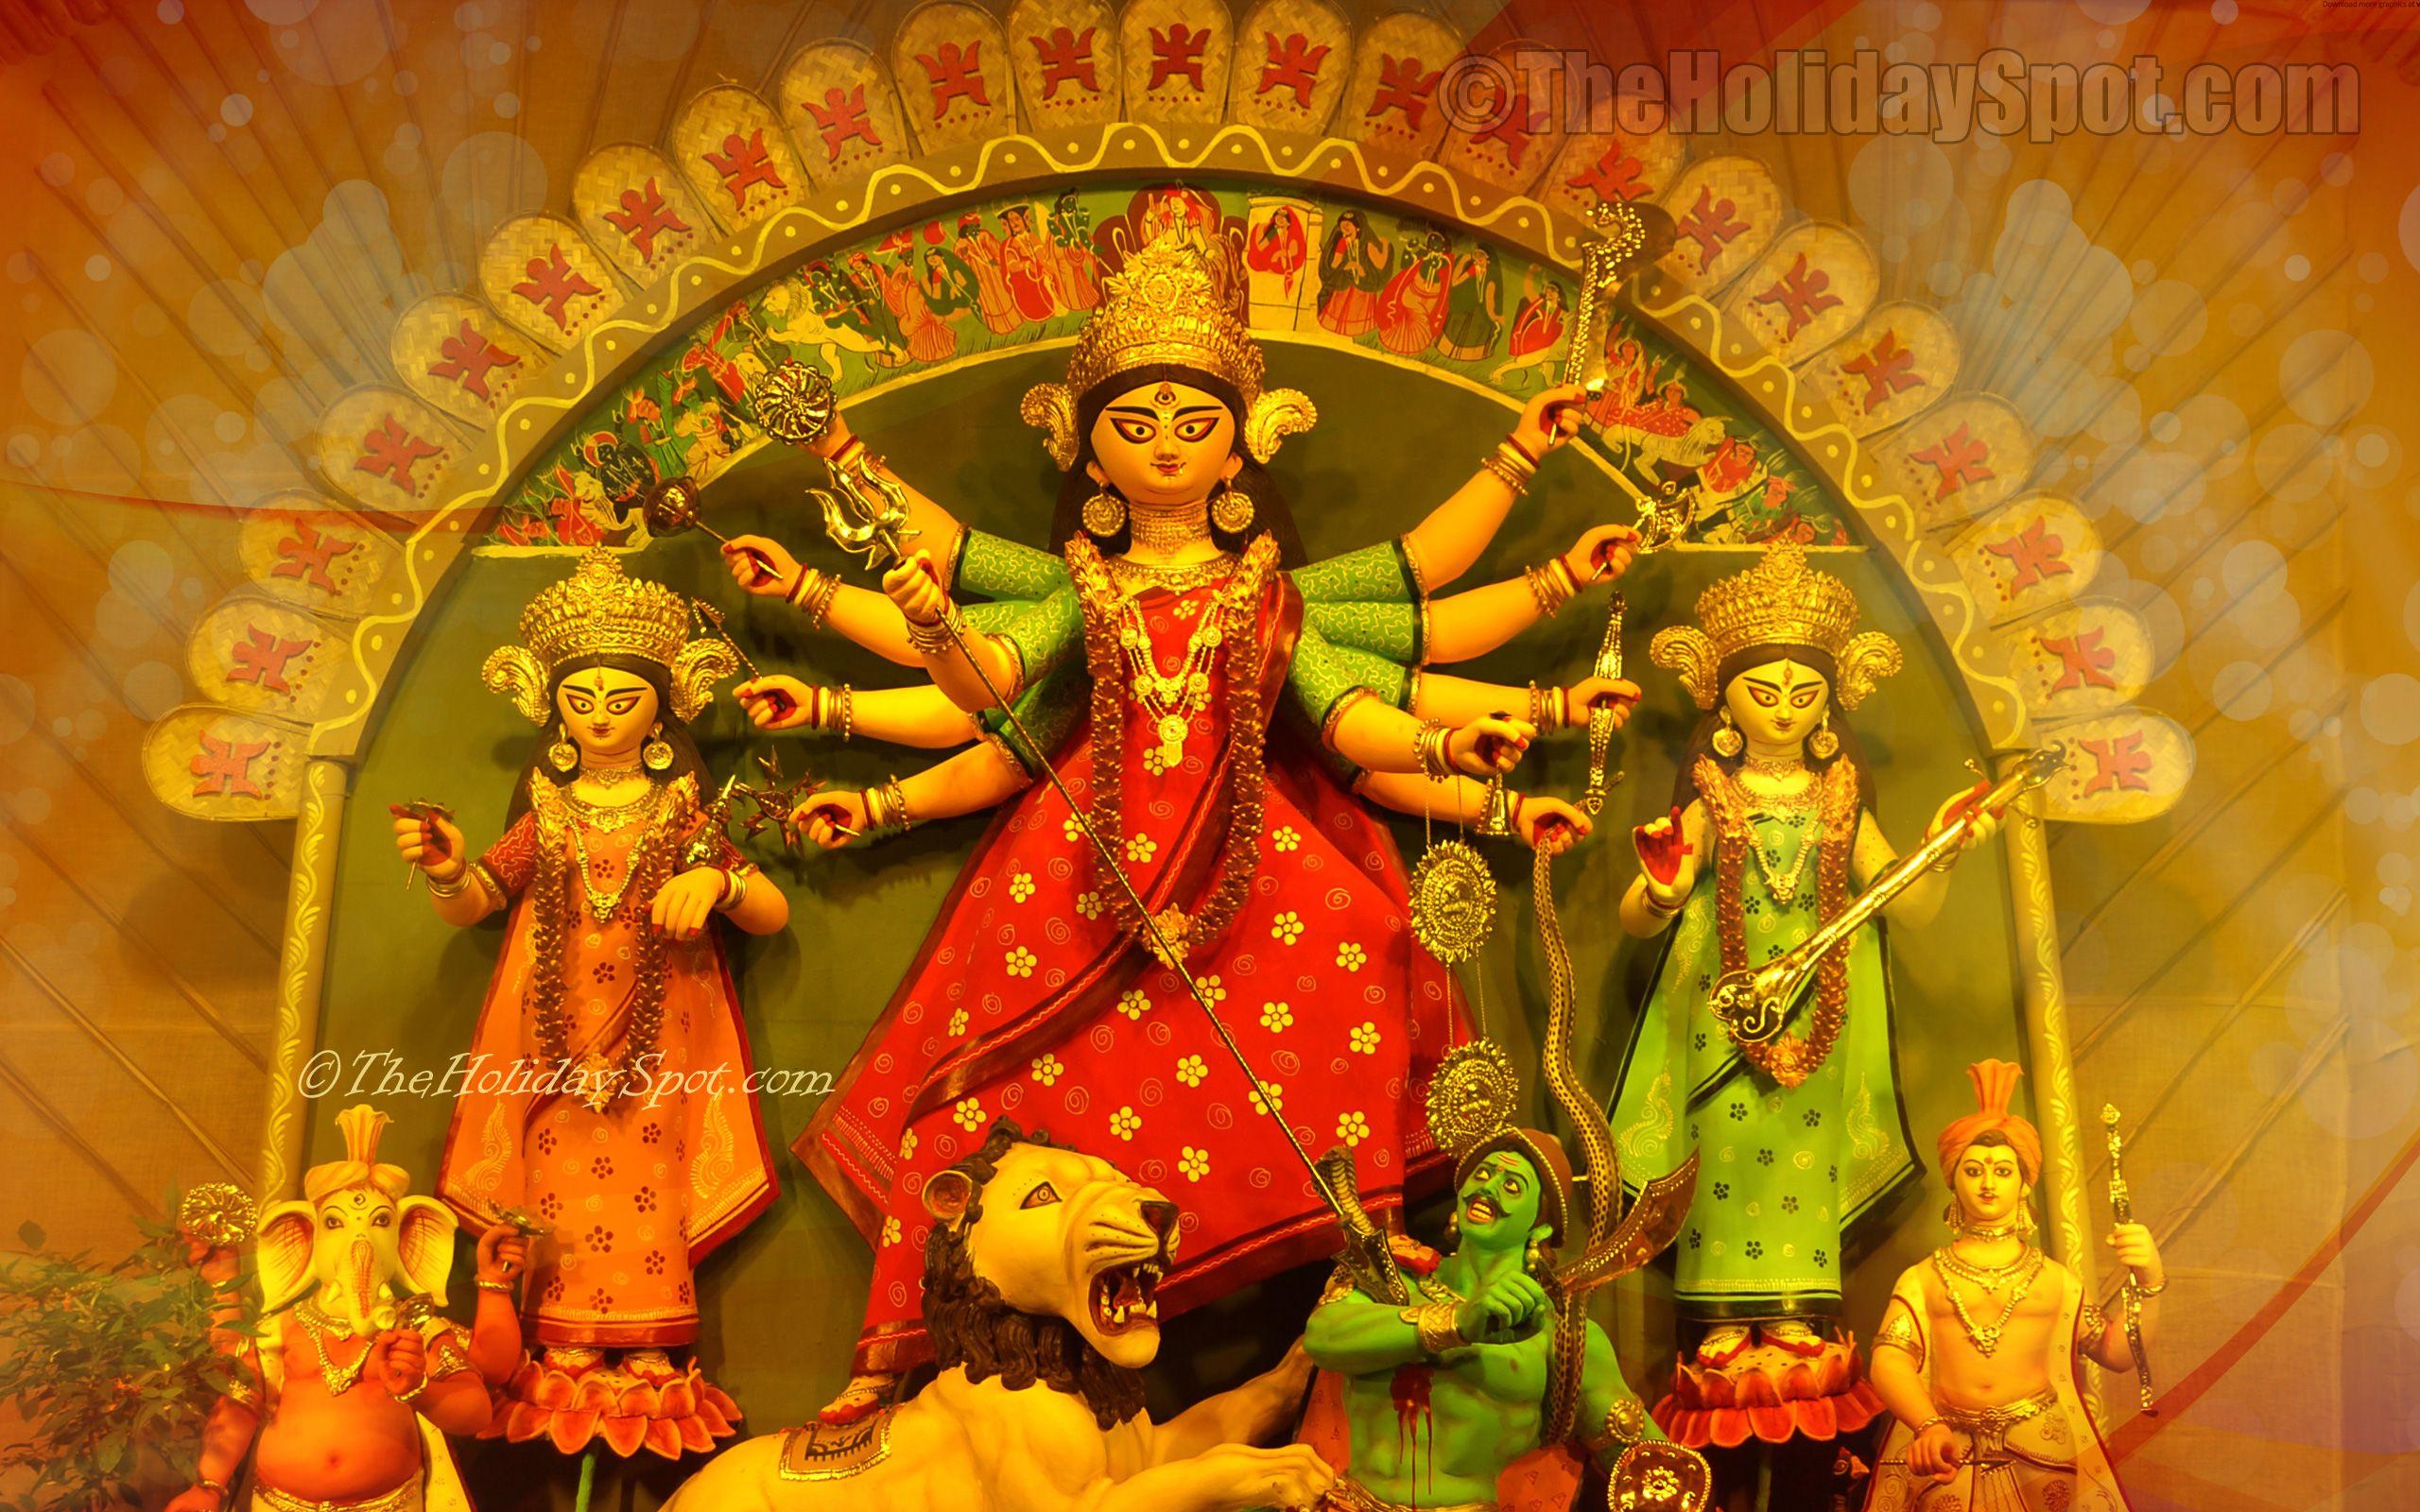 Durga puja wallpaper, its free, download now!. Durga Puja Image